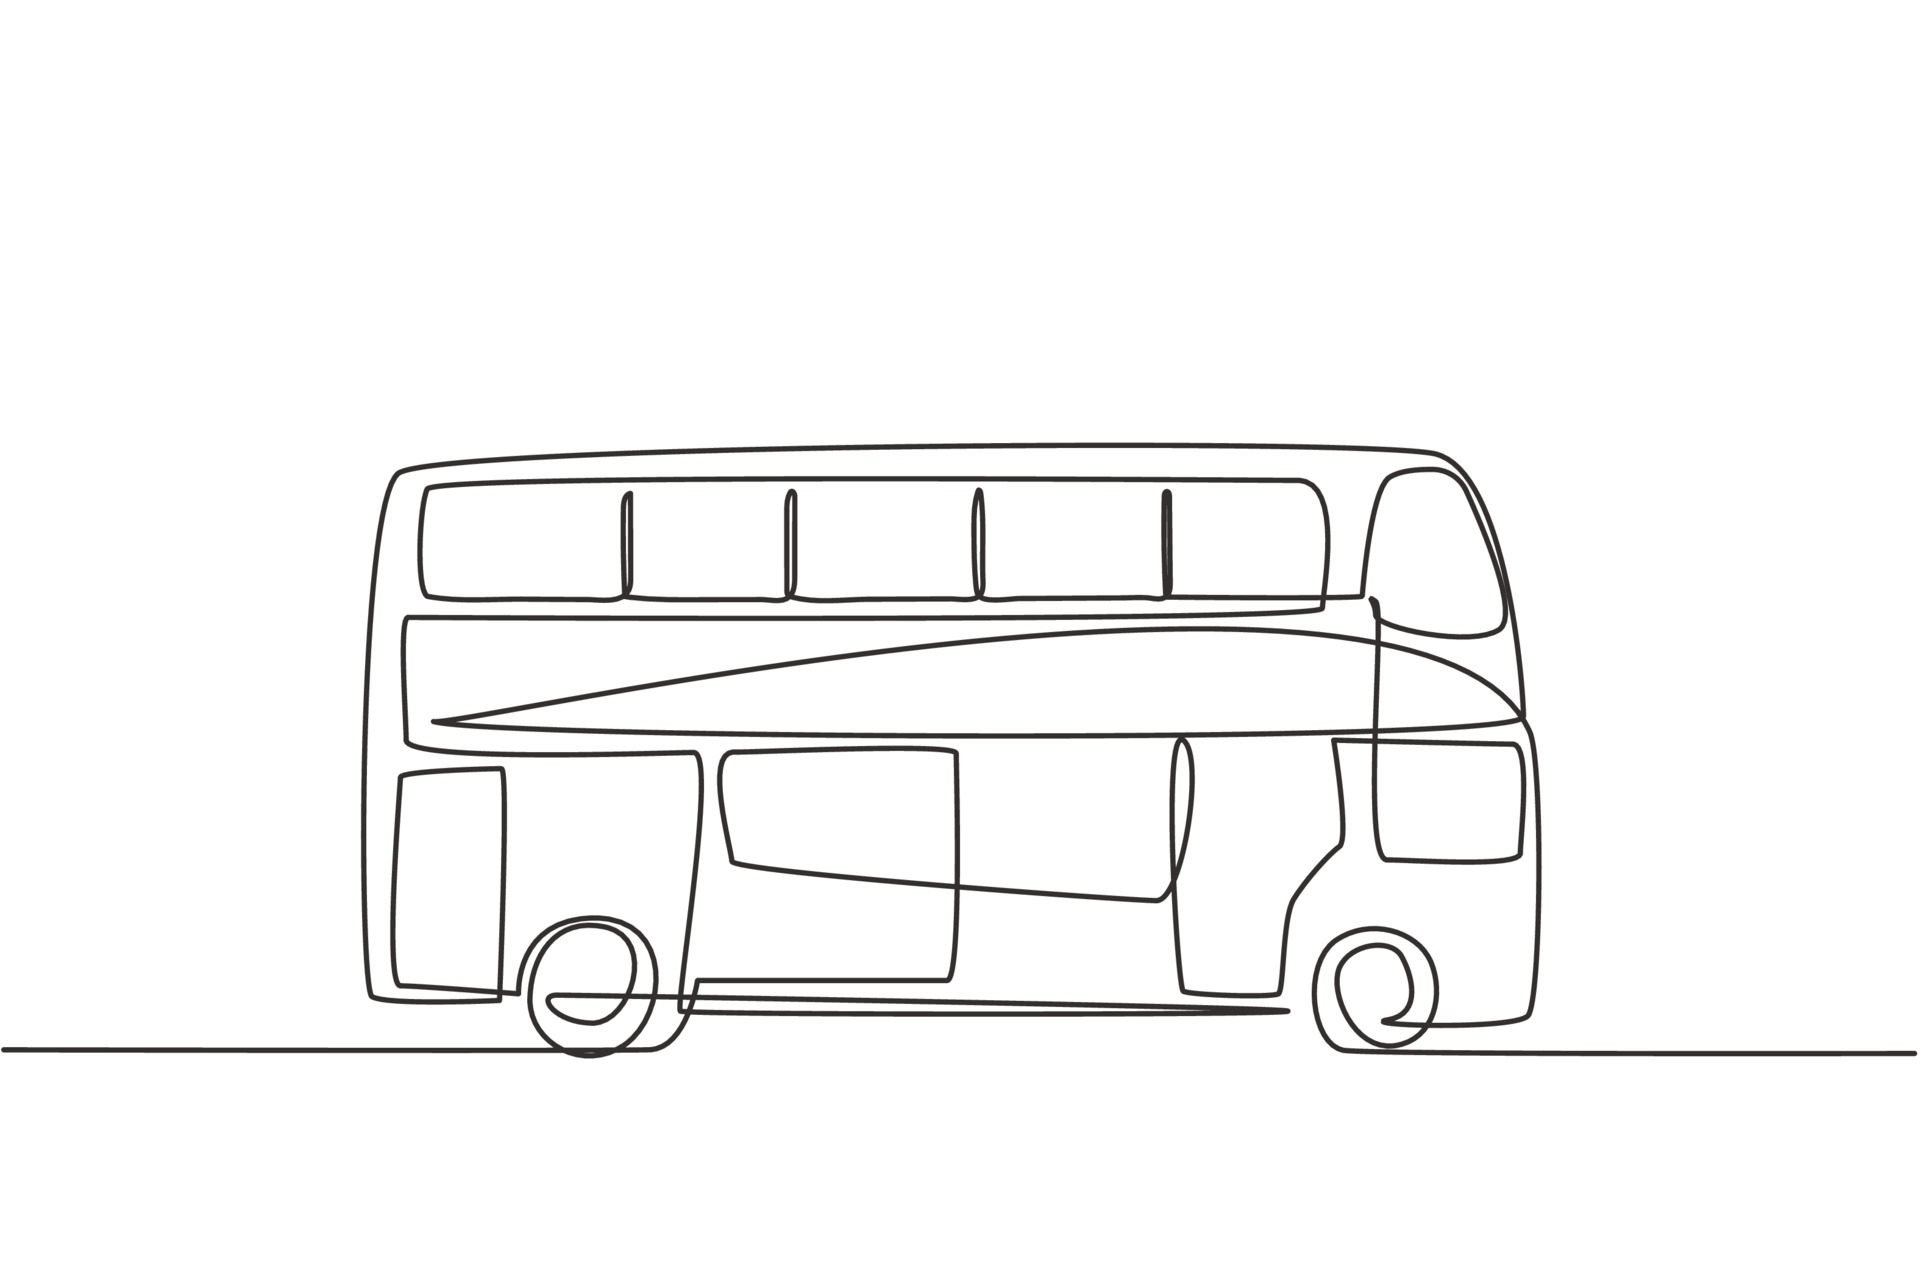 Autobuses de dos pisos de dibujo de línea continua única que se ven de  costado, sirven a los turistas para recorrer la ciudad disfrutando de sus  vacaciones. Ilustración de vector de diseño